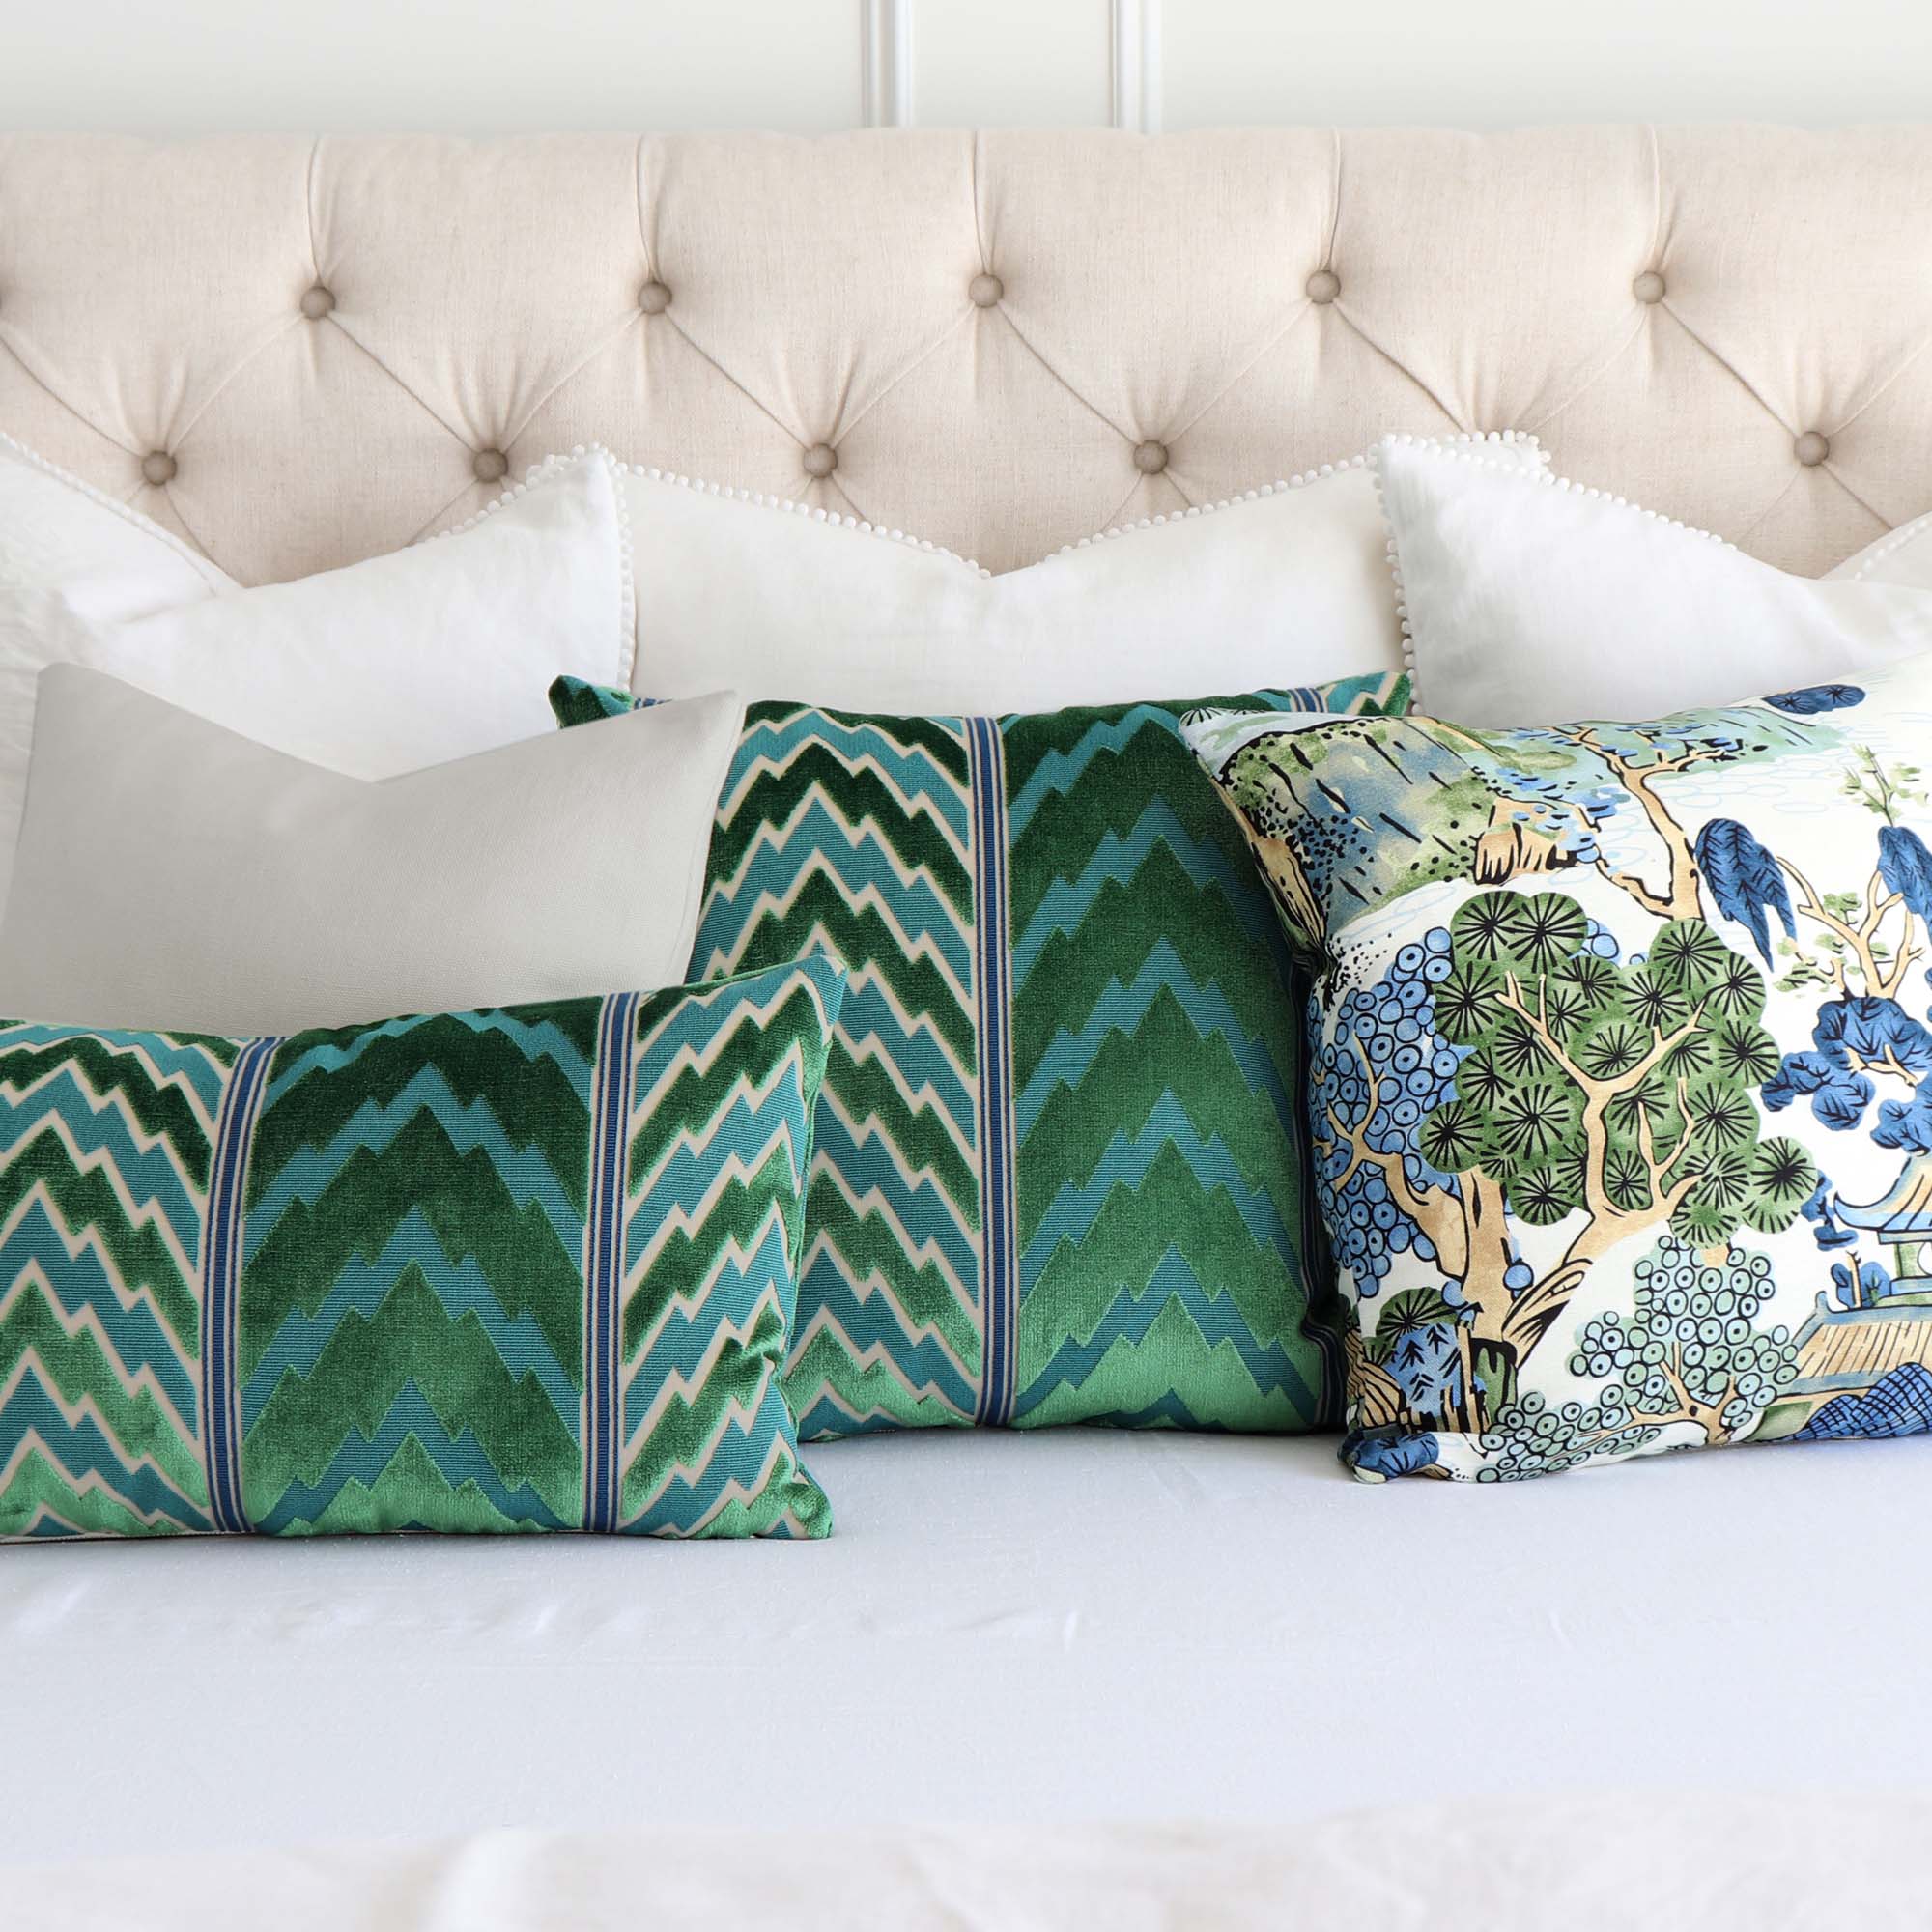 Schumacher Florentine Emerald Green Velvet Flame Stitch Designer Luxury Decorative Throw Pillow Cover